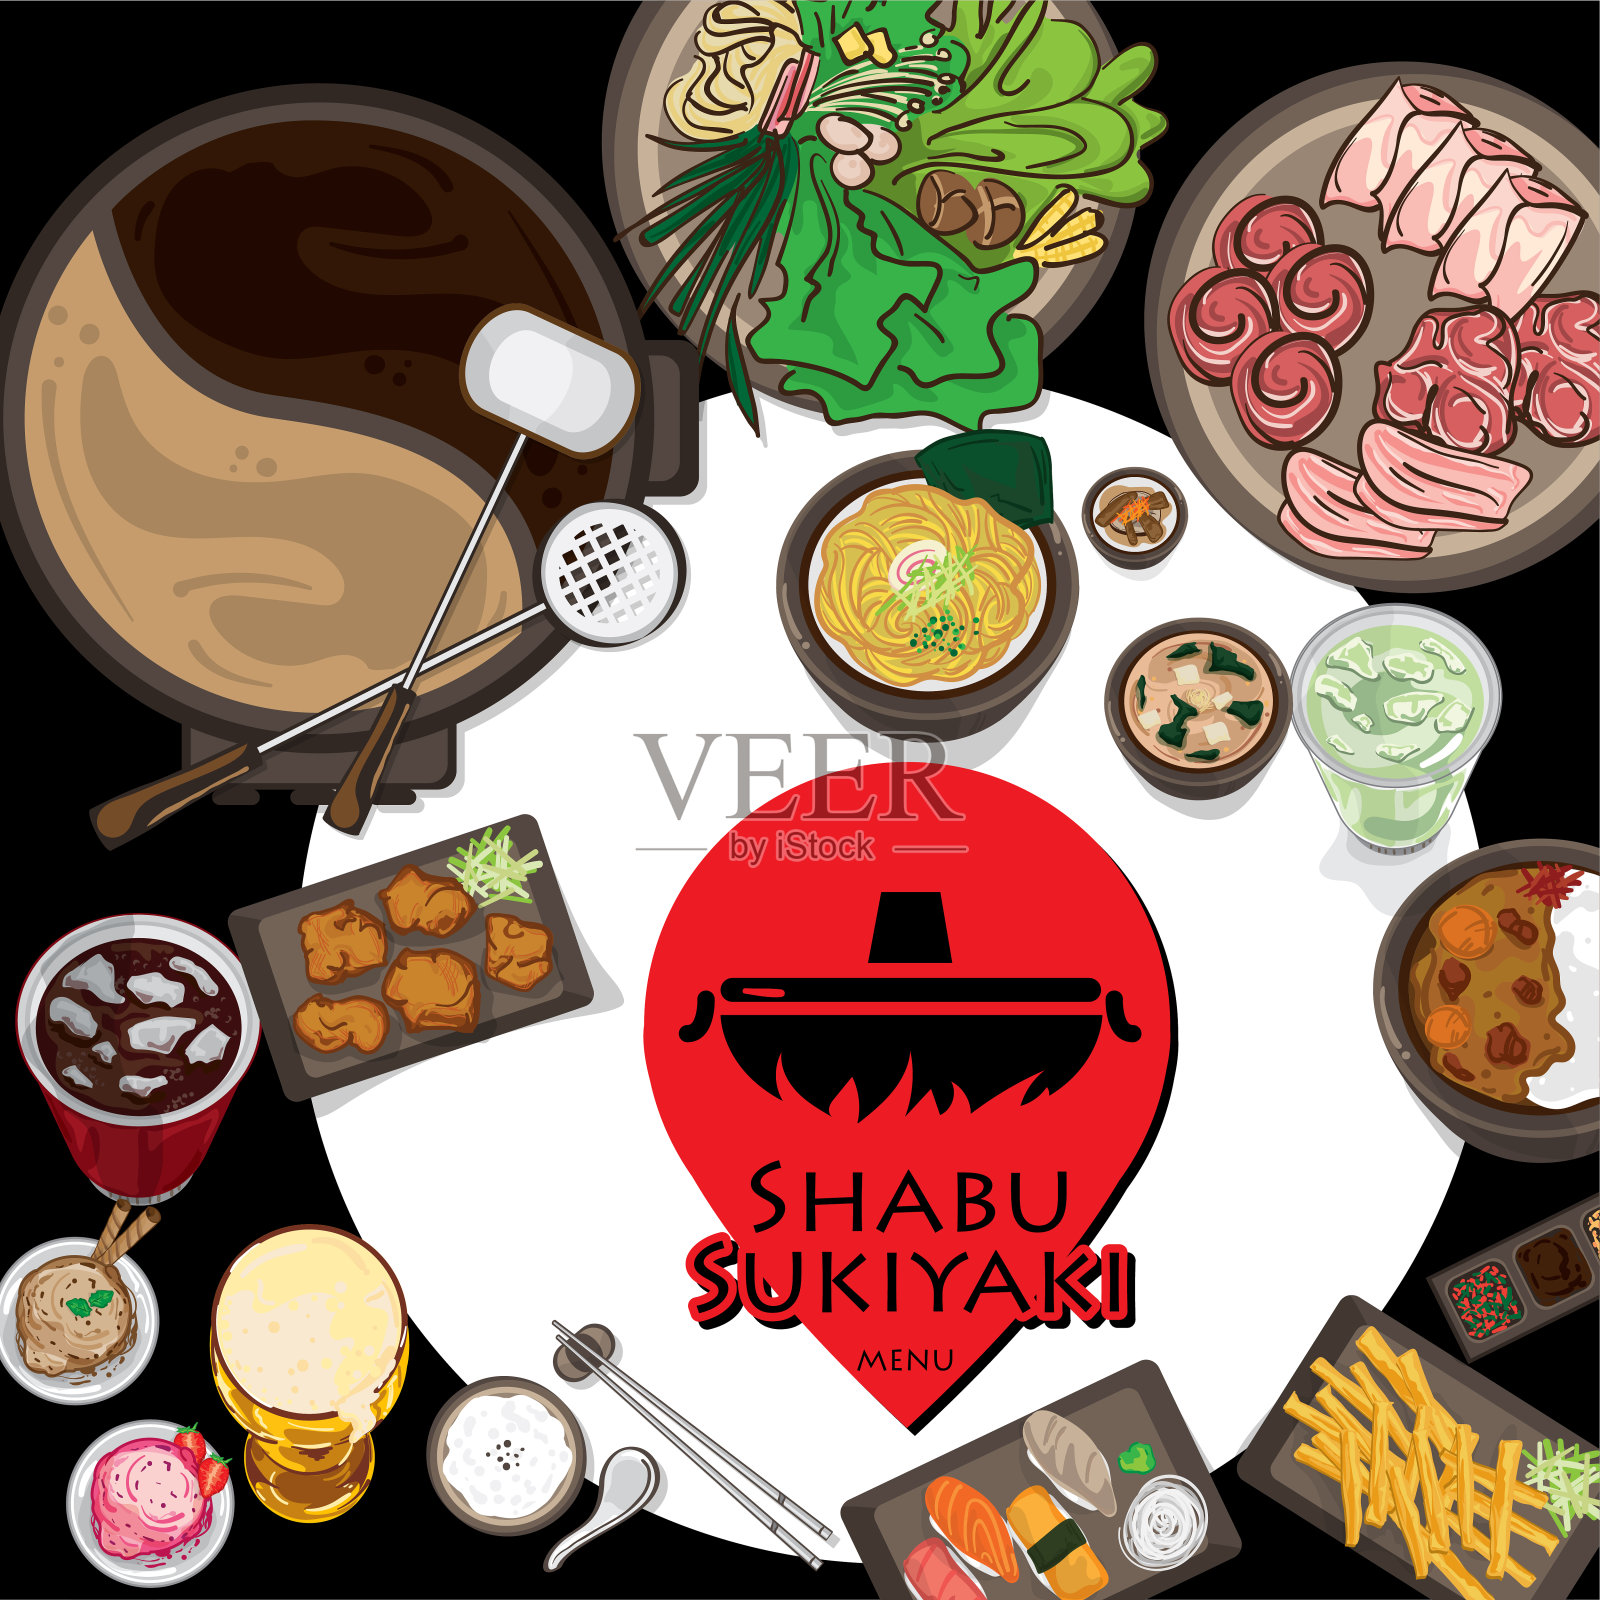 菜单日式素喜烧餐厅模板设计图形对象插画图片素材